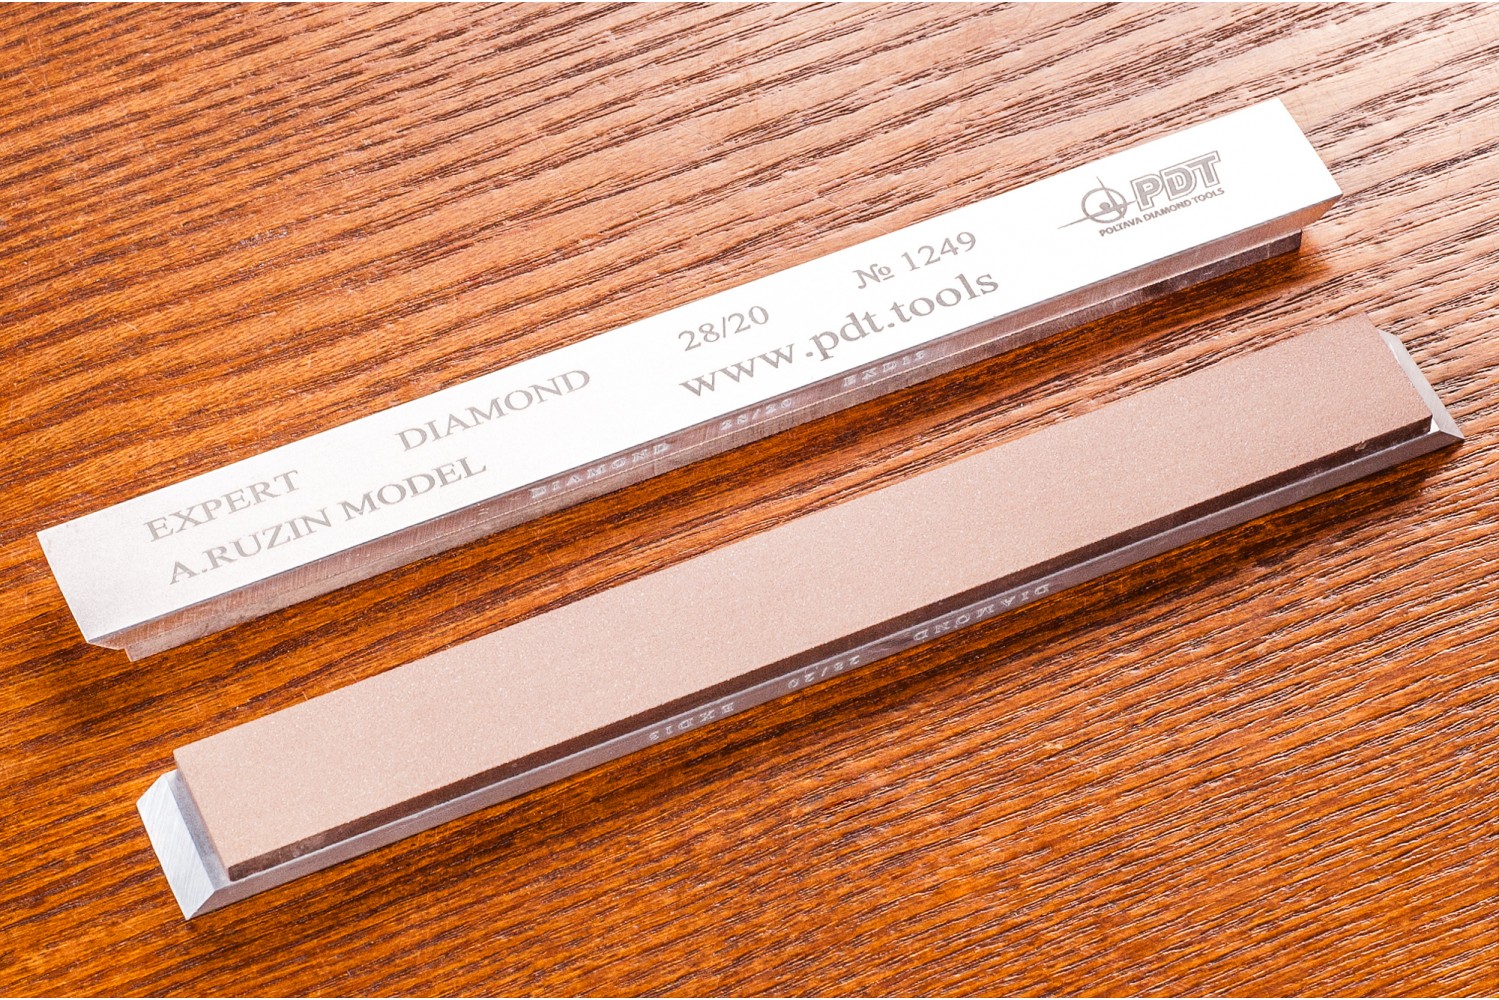 Алмазный брусок для заточки PDT EXPERT 150-17-3мм 28/20 мкм на алюминиевом бланке запасной точильный модуль для ножей с углом заточки 20 градусов к электрическому станку chef schoice 2100